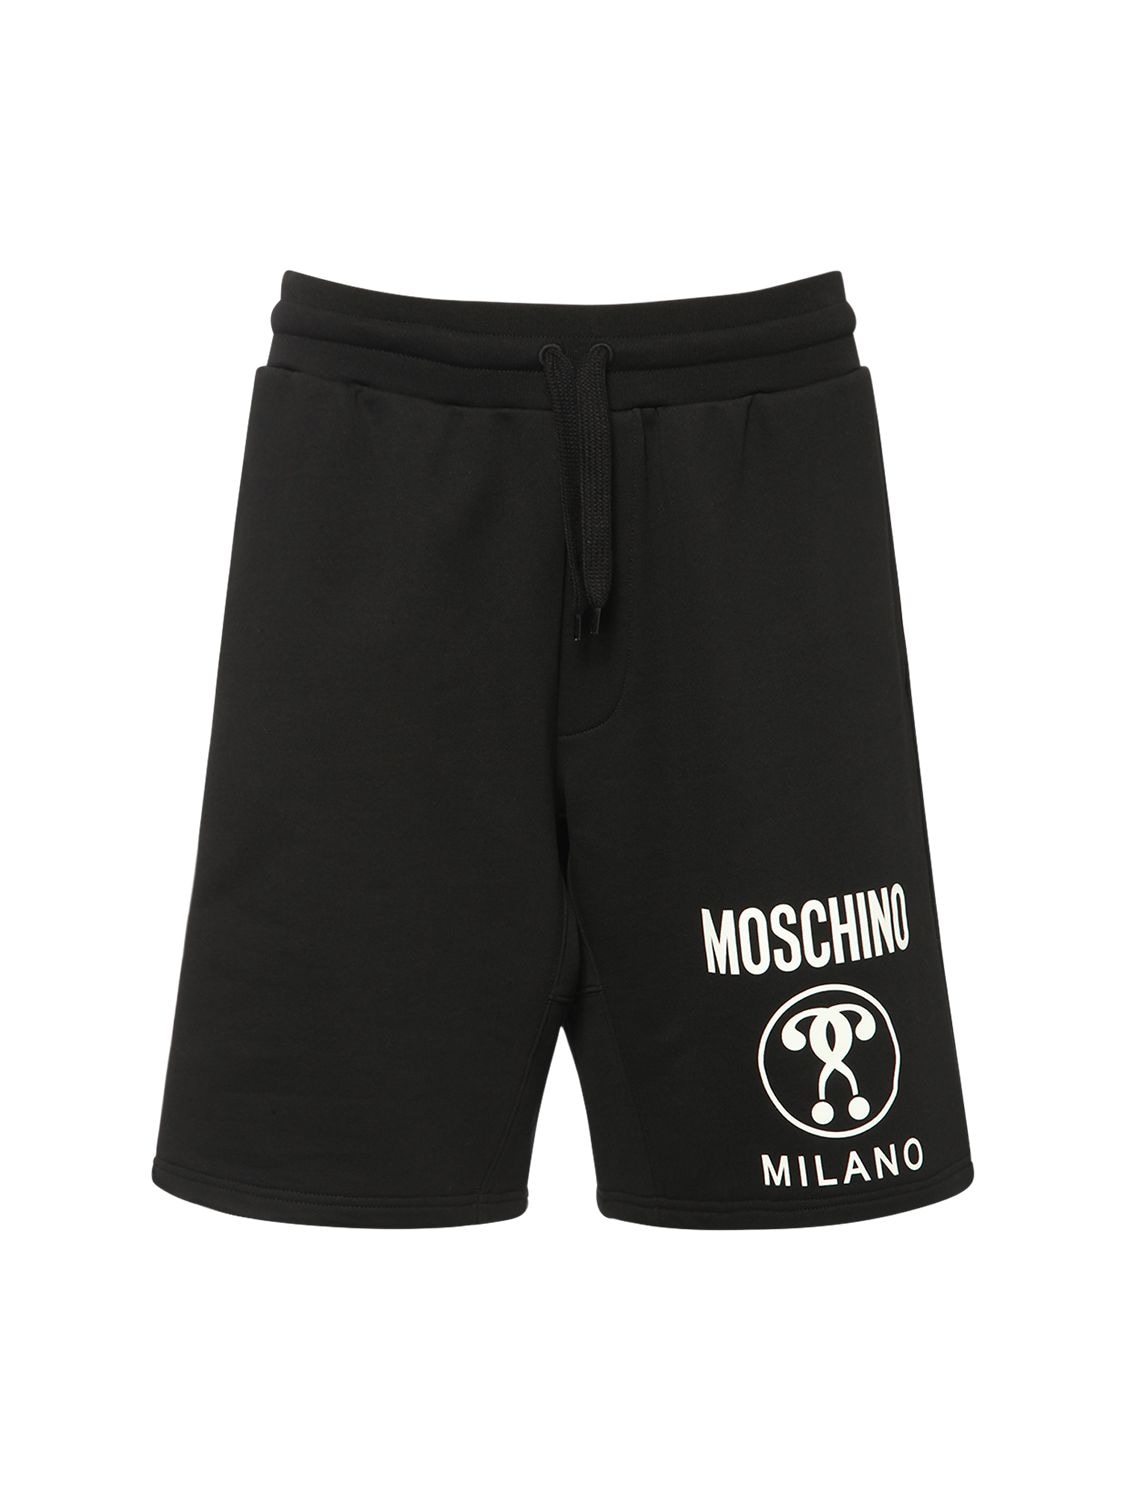 Homme Vêtements Articles de sport et dentraînement Shorts de sport Bermuda shorts Moschino pour homme en coloris Noir 